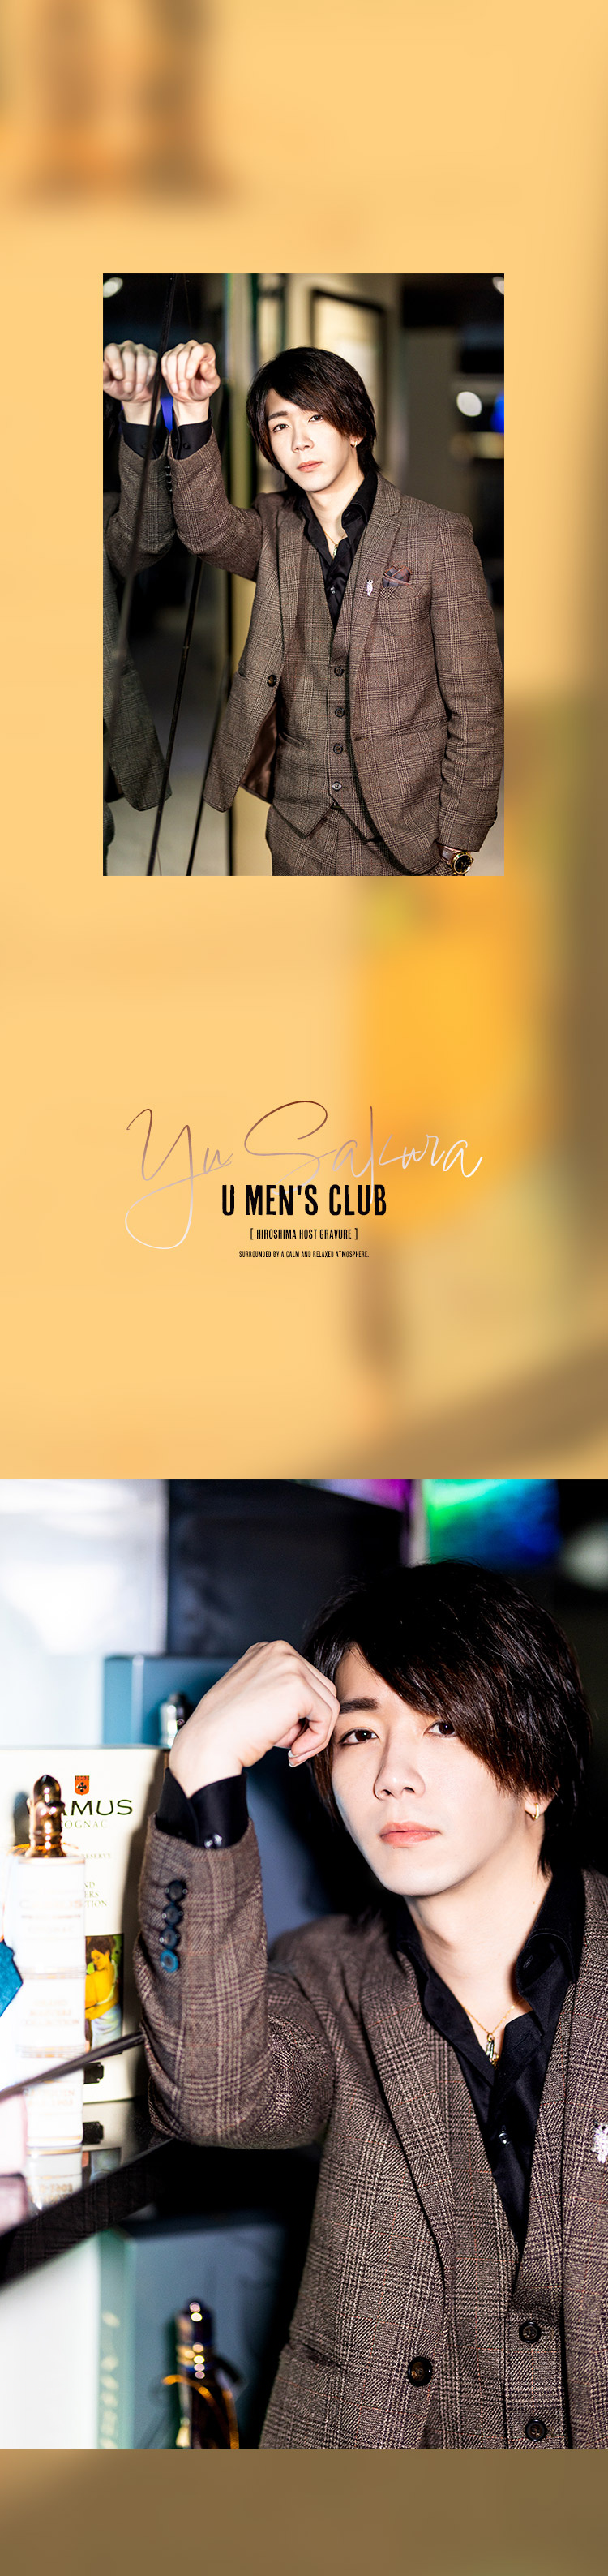 U men's clubの注目すべき人気ホストのひとり、「咲蘭 悠」幹部補佐。まだまださらなる魅力を開花中。